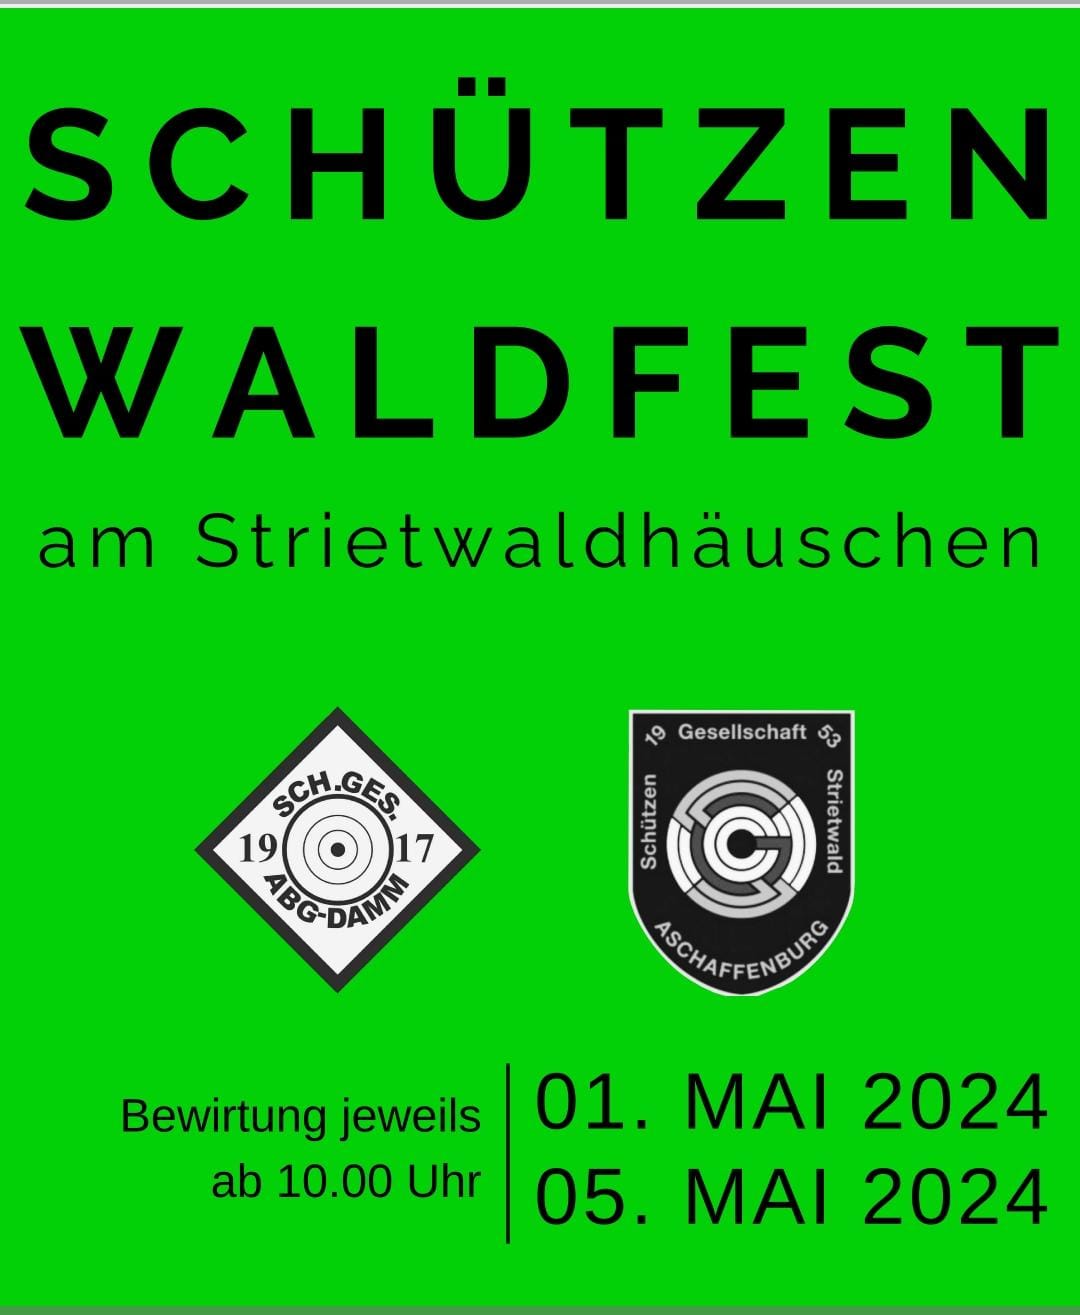 Schützen Waldfest am 1. Mai 2024 und 5. Mai 2024 am Strietwaldhäuschen ab 10 Uhr